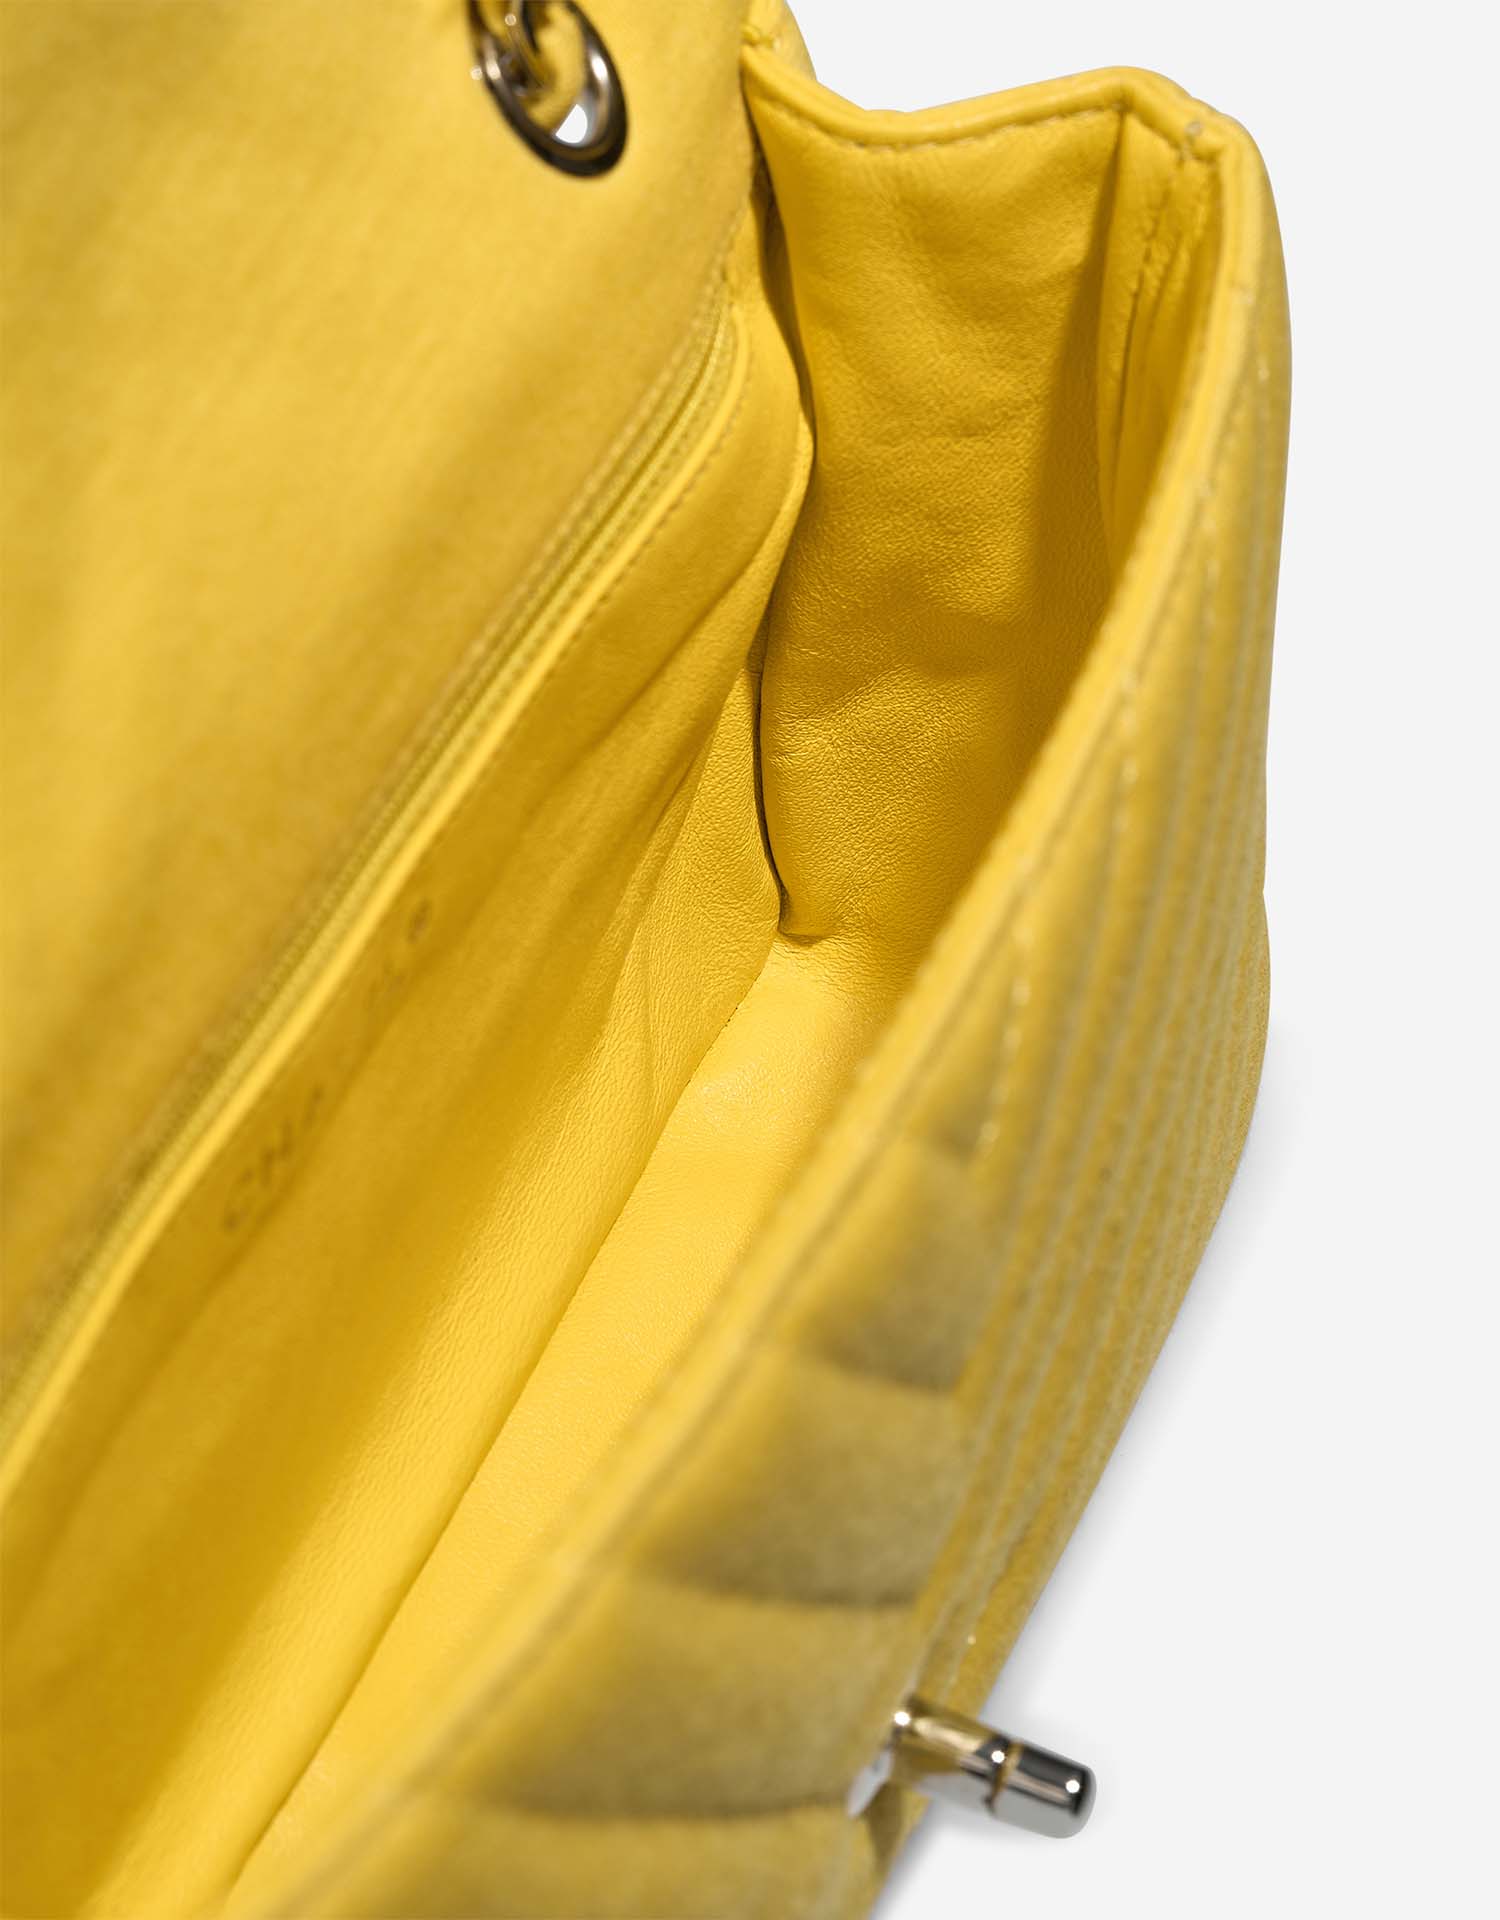 Chanel Timeless Medium Yellow Inside | Verkaufen Sie Ihre Designer-Tasche auf Saclab.com